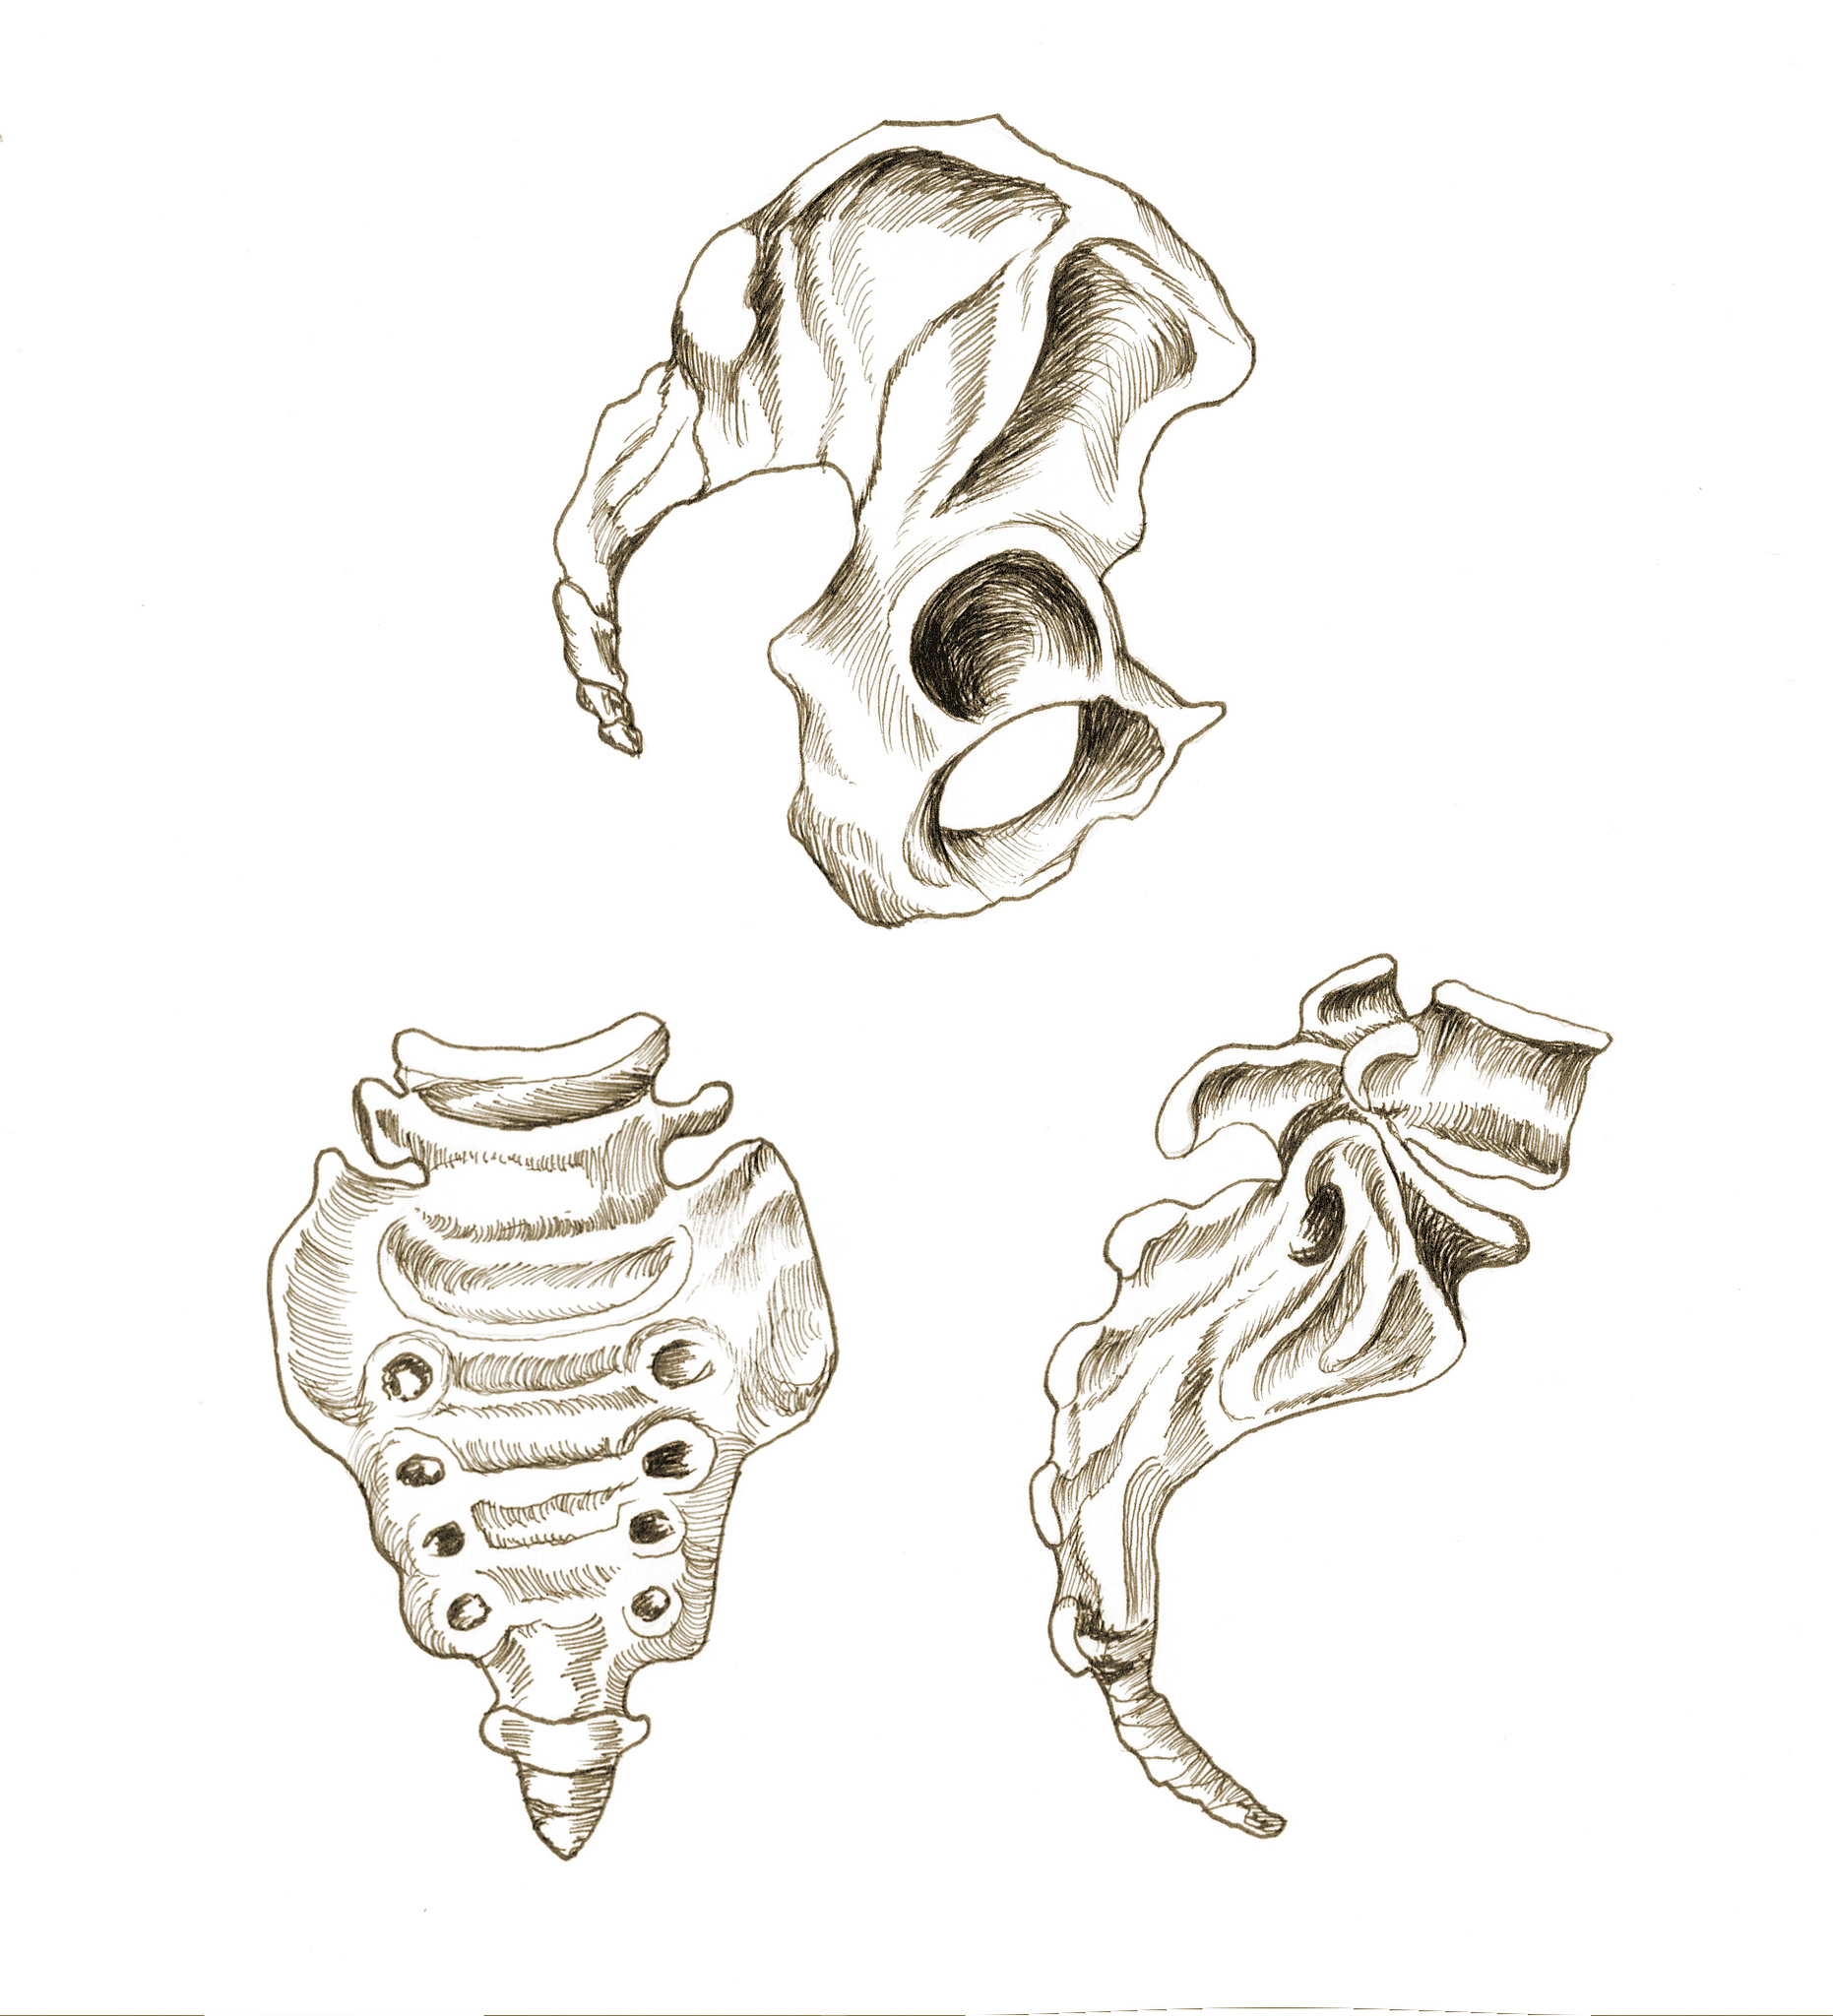 Rysunek szkieletu miednicy i kości ogonowej